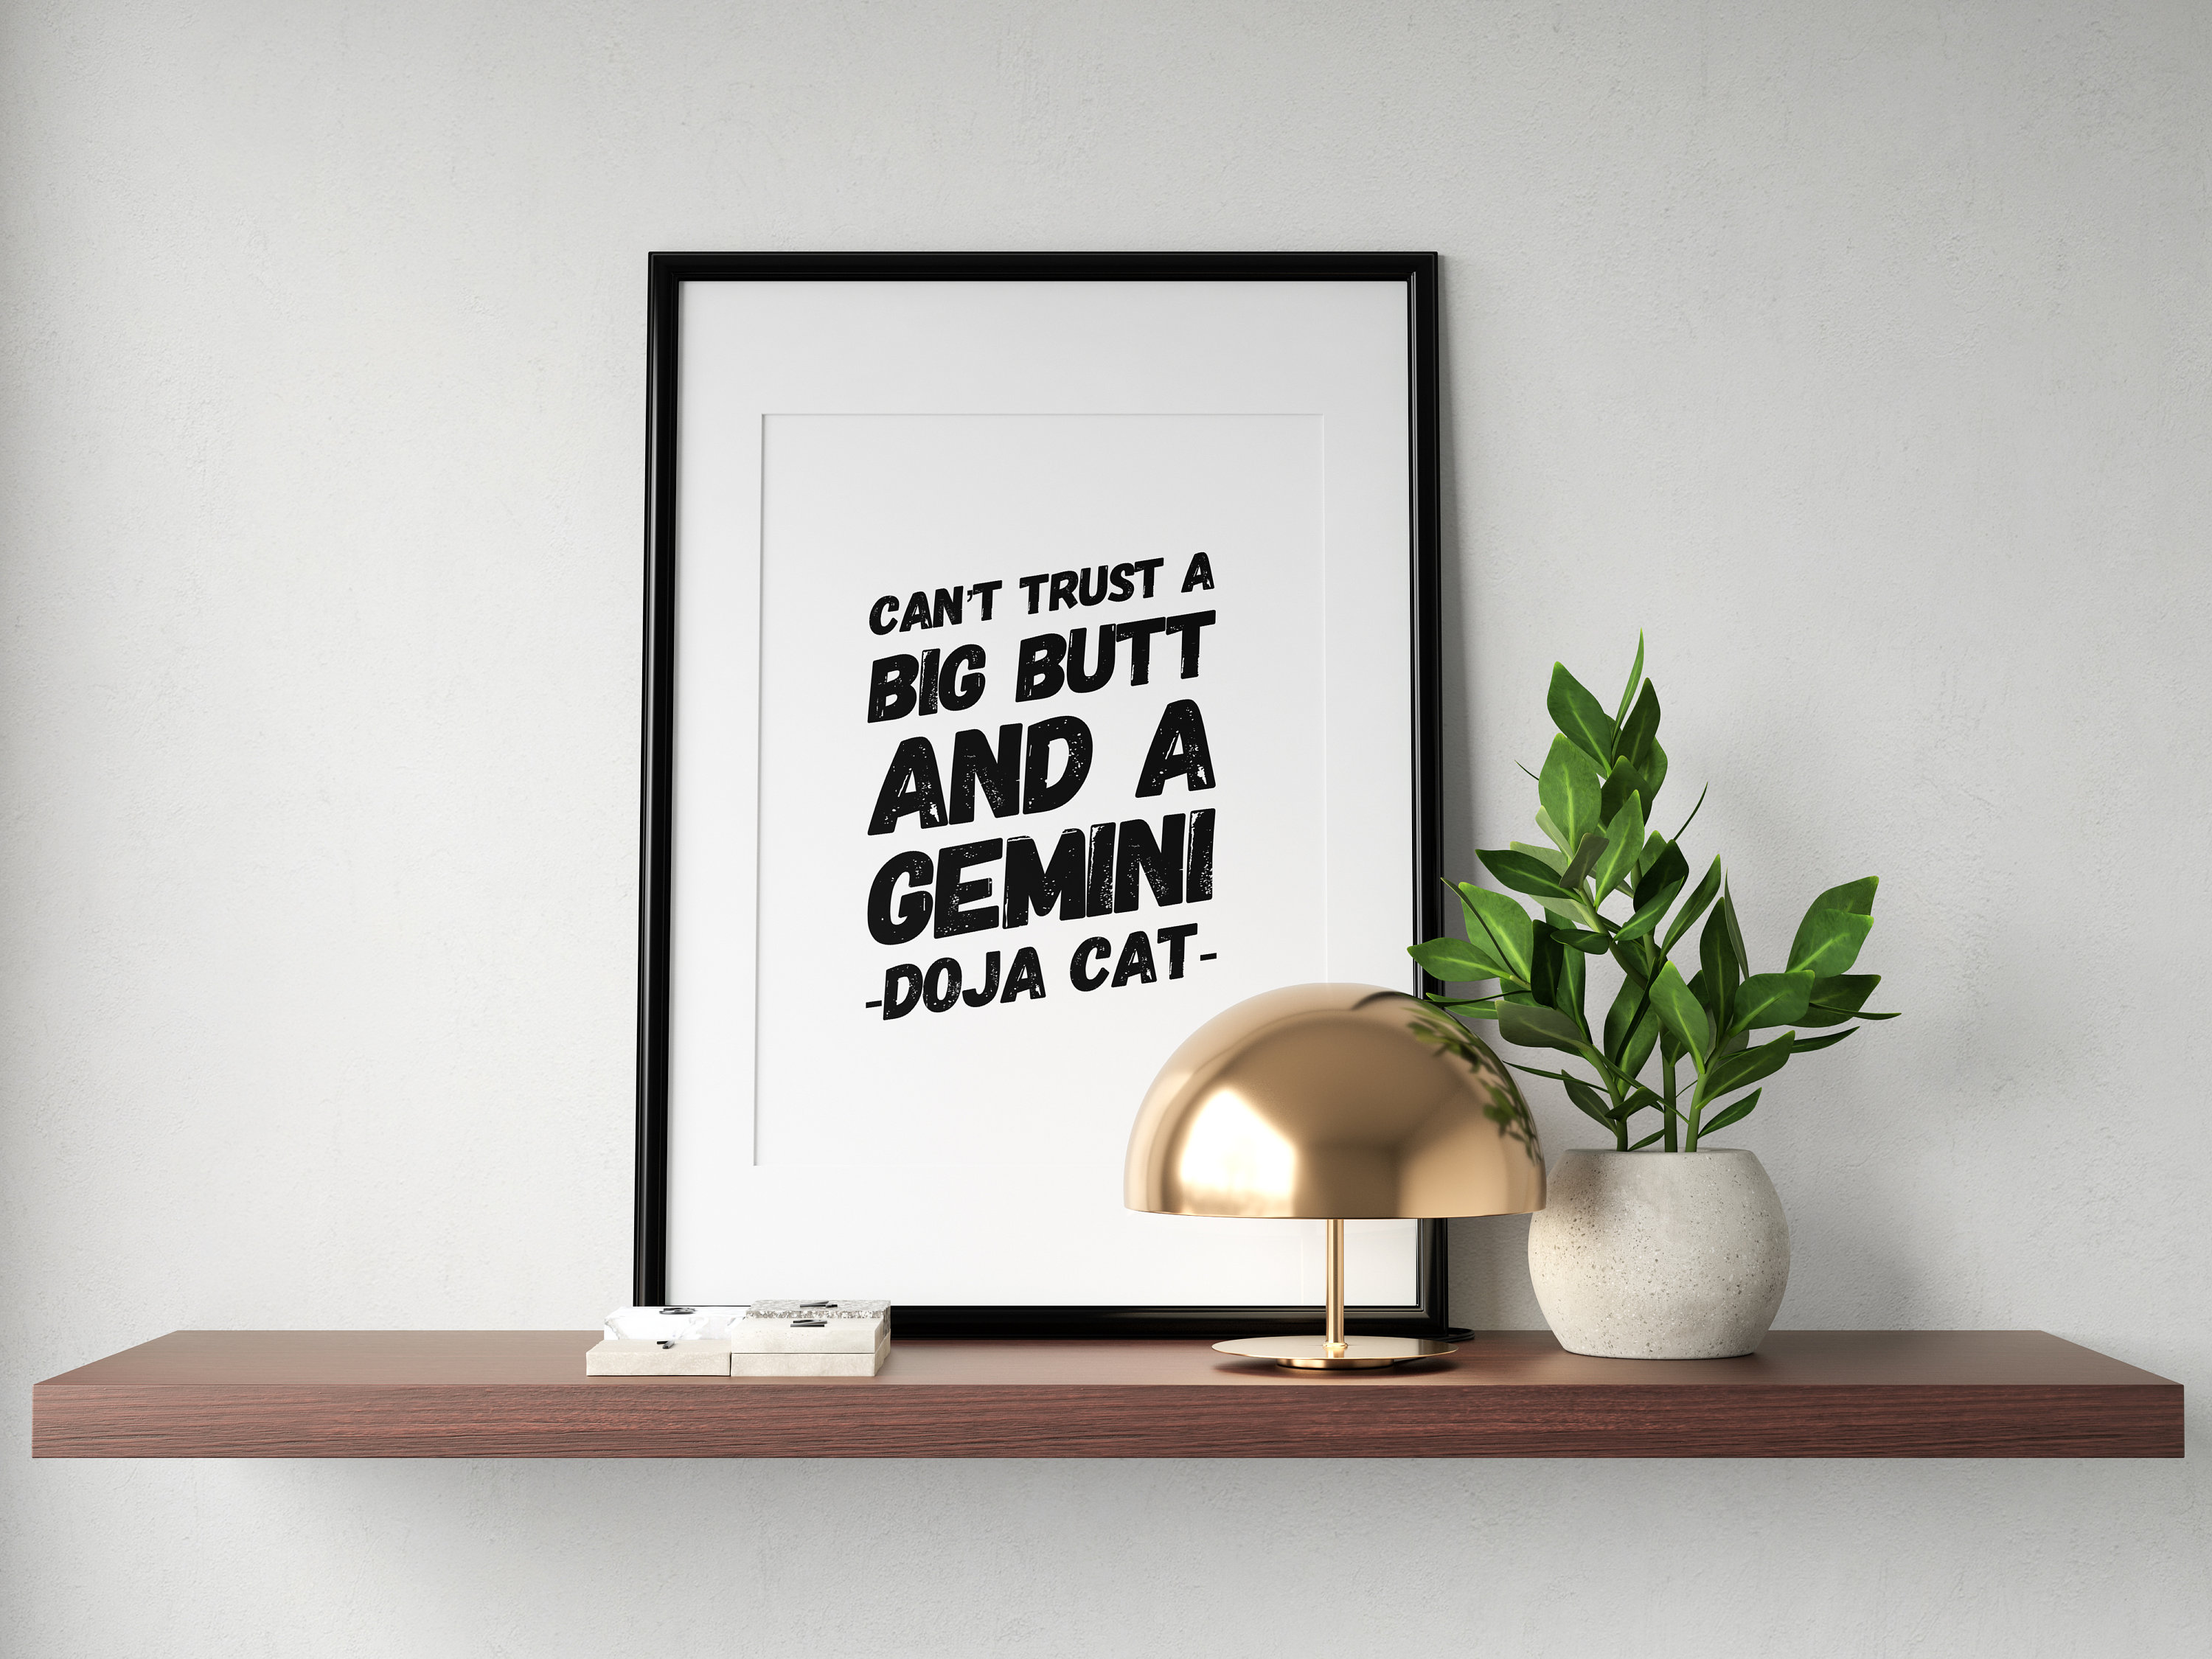 Doja Cat Lyrics